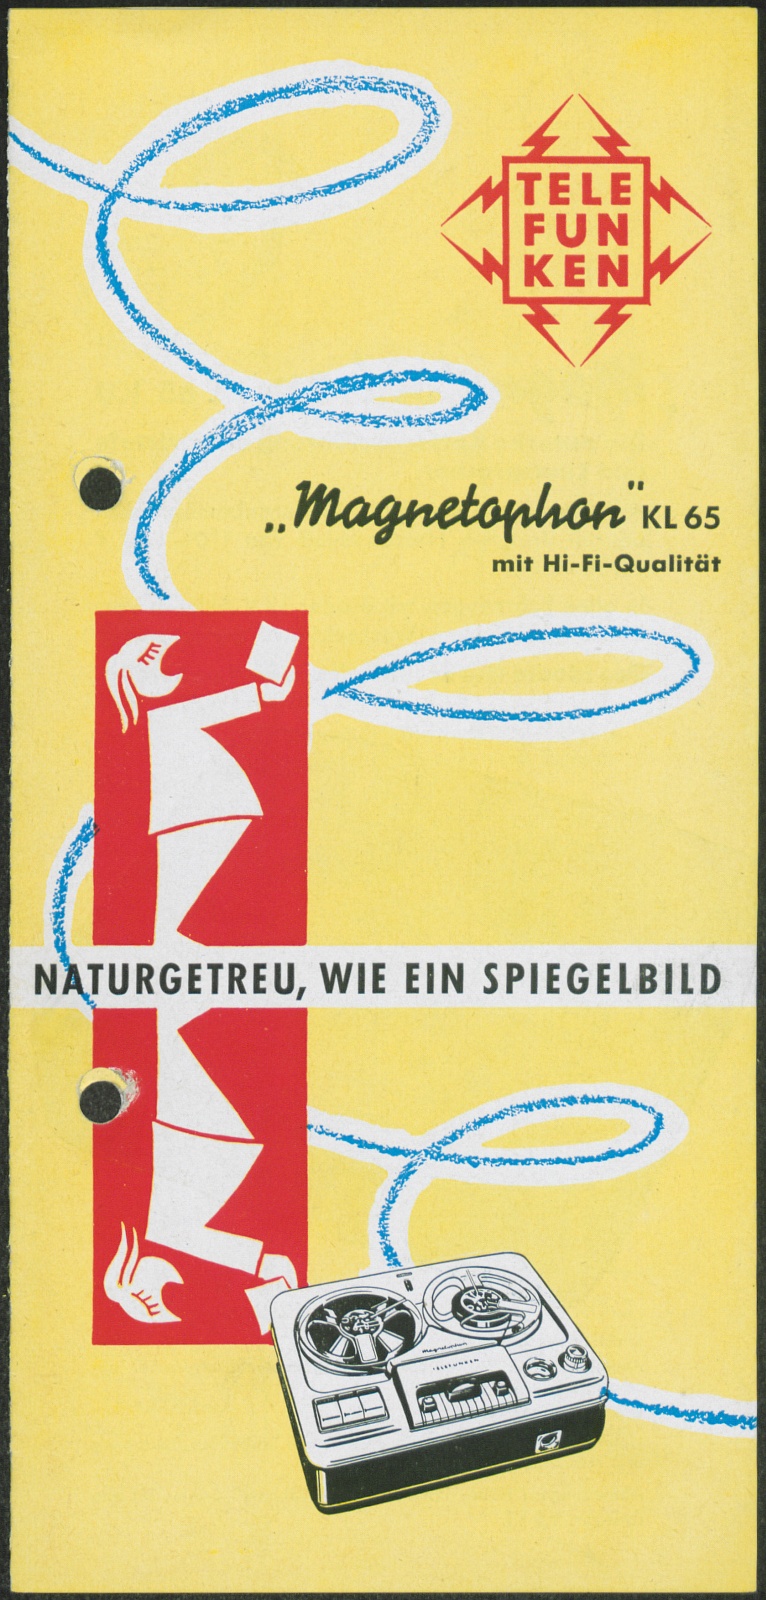 Werbeprospekt: Magnetophon KL65 mit HI-Fi-Qualität; Naturgetreu, wie ein Spiegelbild (Stiftung Deutsches Technikmuseum Berlin CC0)